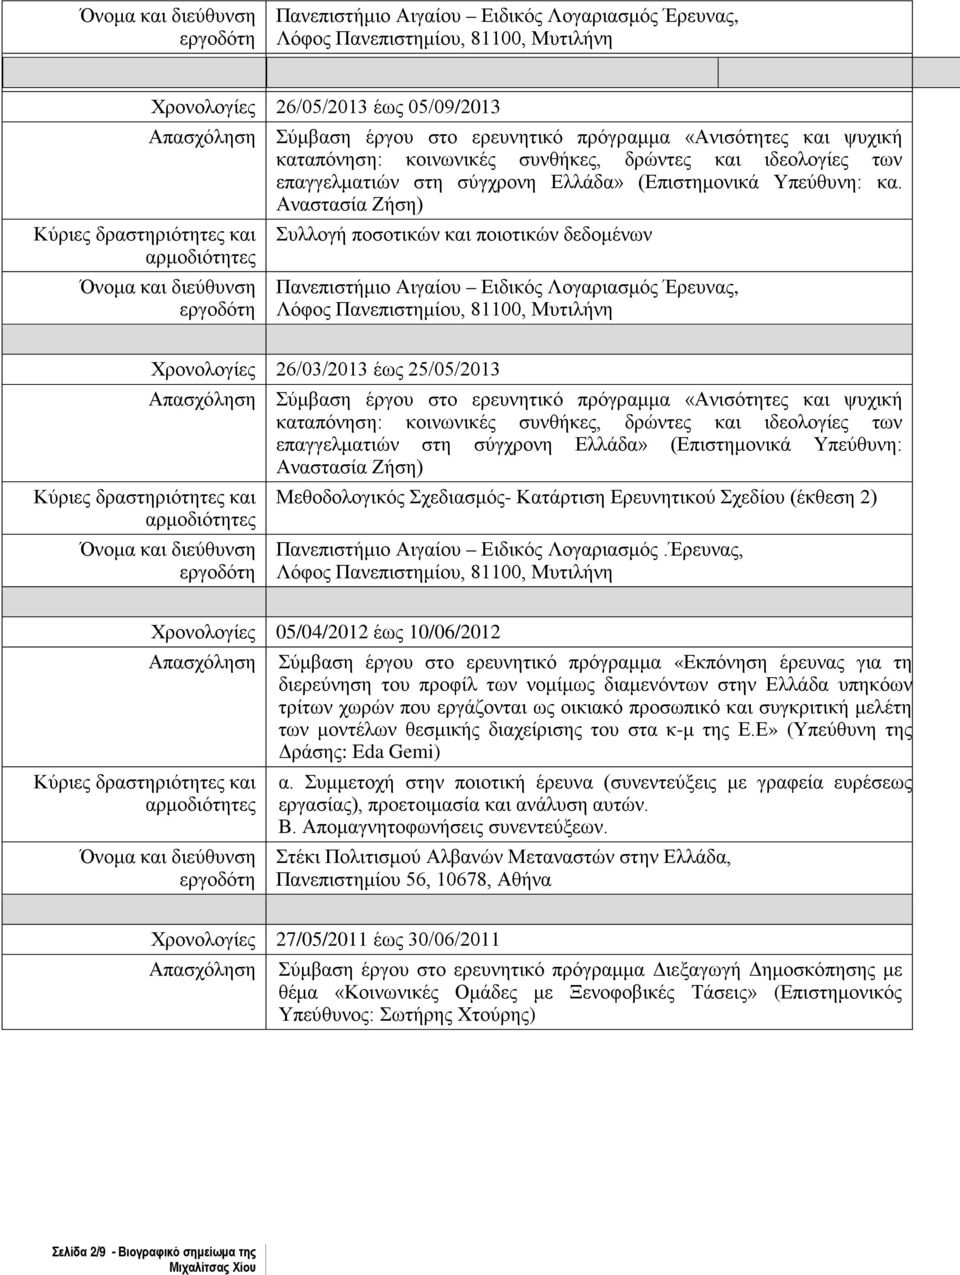 Αναστασία Ζήση) Συλλογή ποσοτικών και ποιοτικών δεδομένων Χρονολογίες 26/03/2013 έως 25/05/2013 Απασχόληση Σύμβαση έργου στο ερευνητικό πρόγραμμα «Ανισότητες και ψυχική καταπόνηση: κοινωνικές